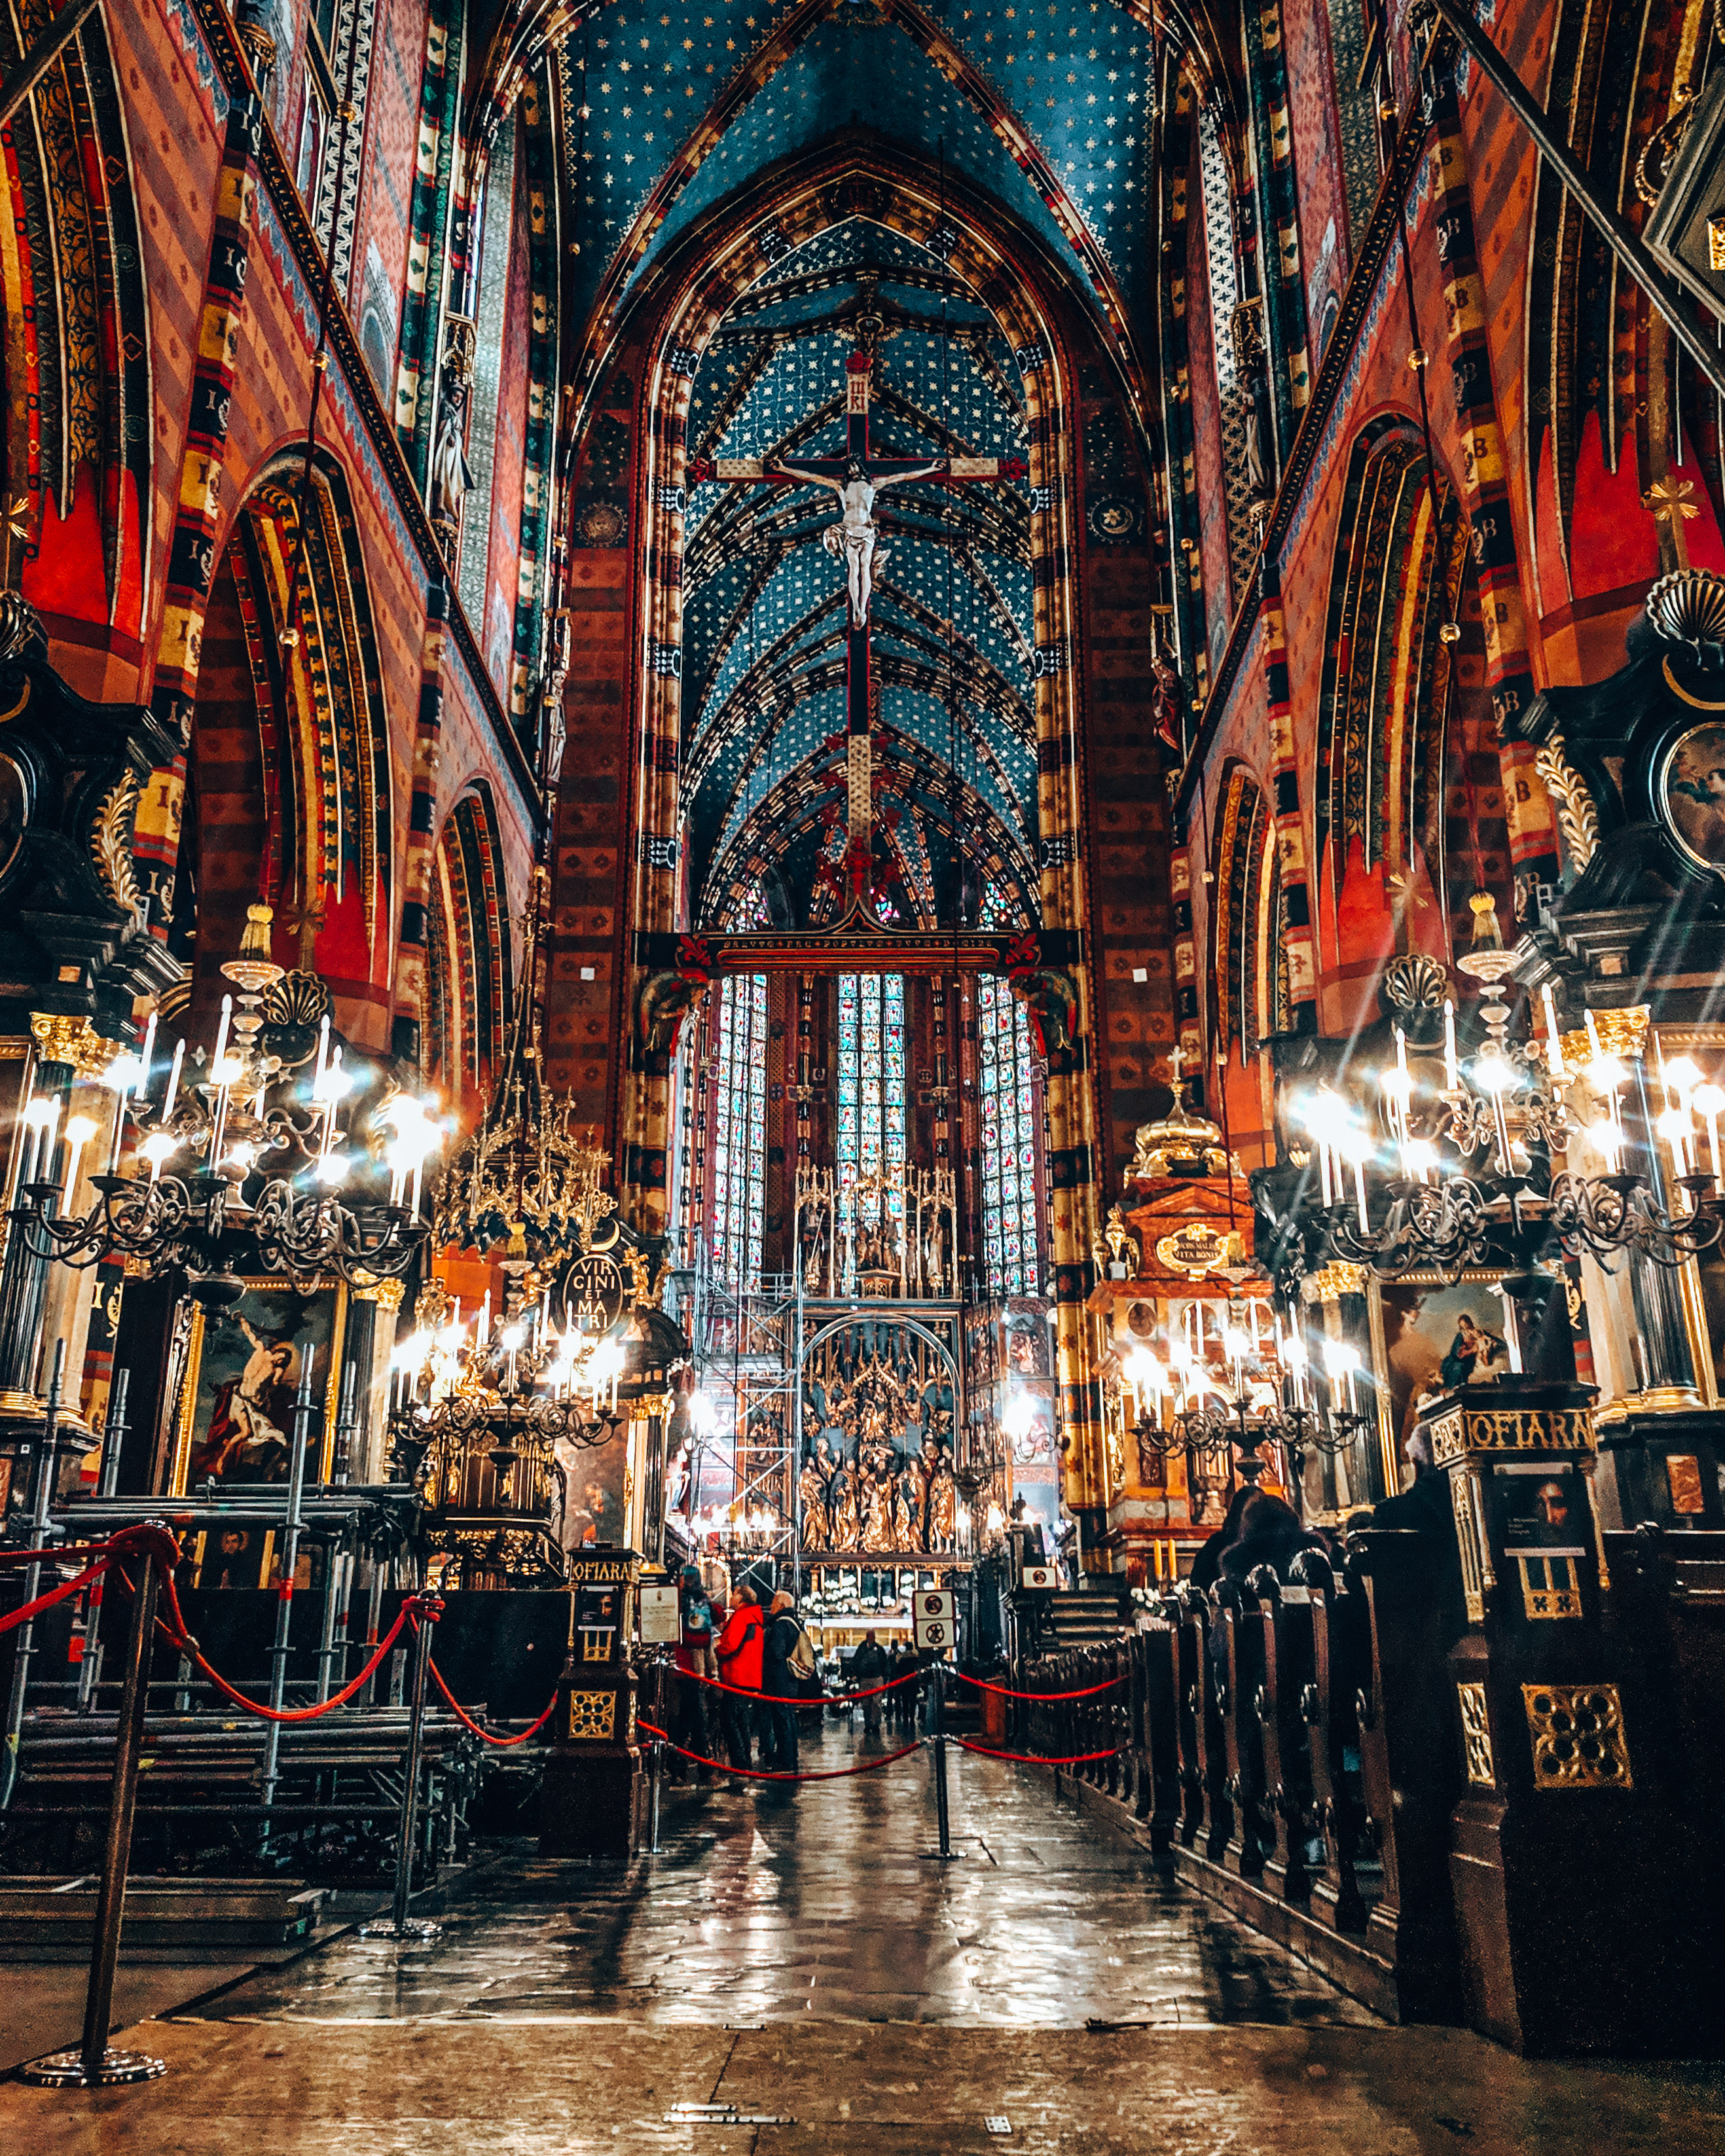 Peak inside St Mary's Basilica in Krakow, Poland